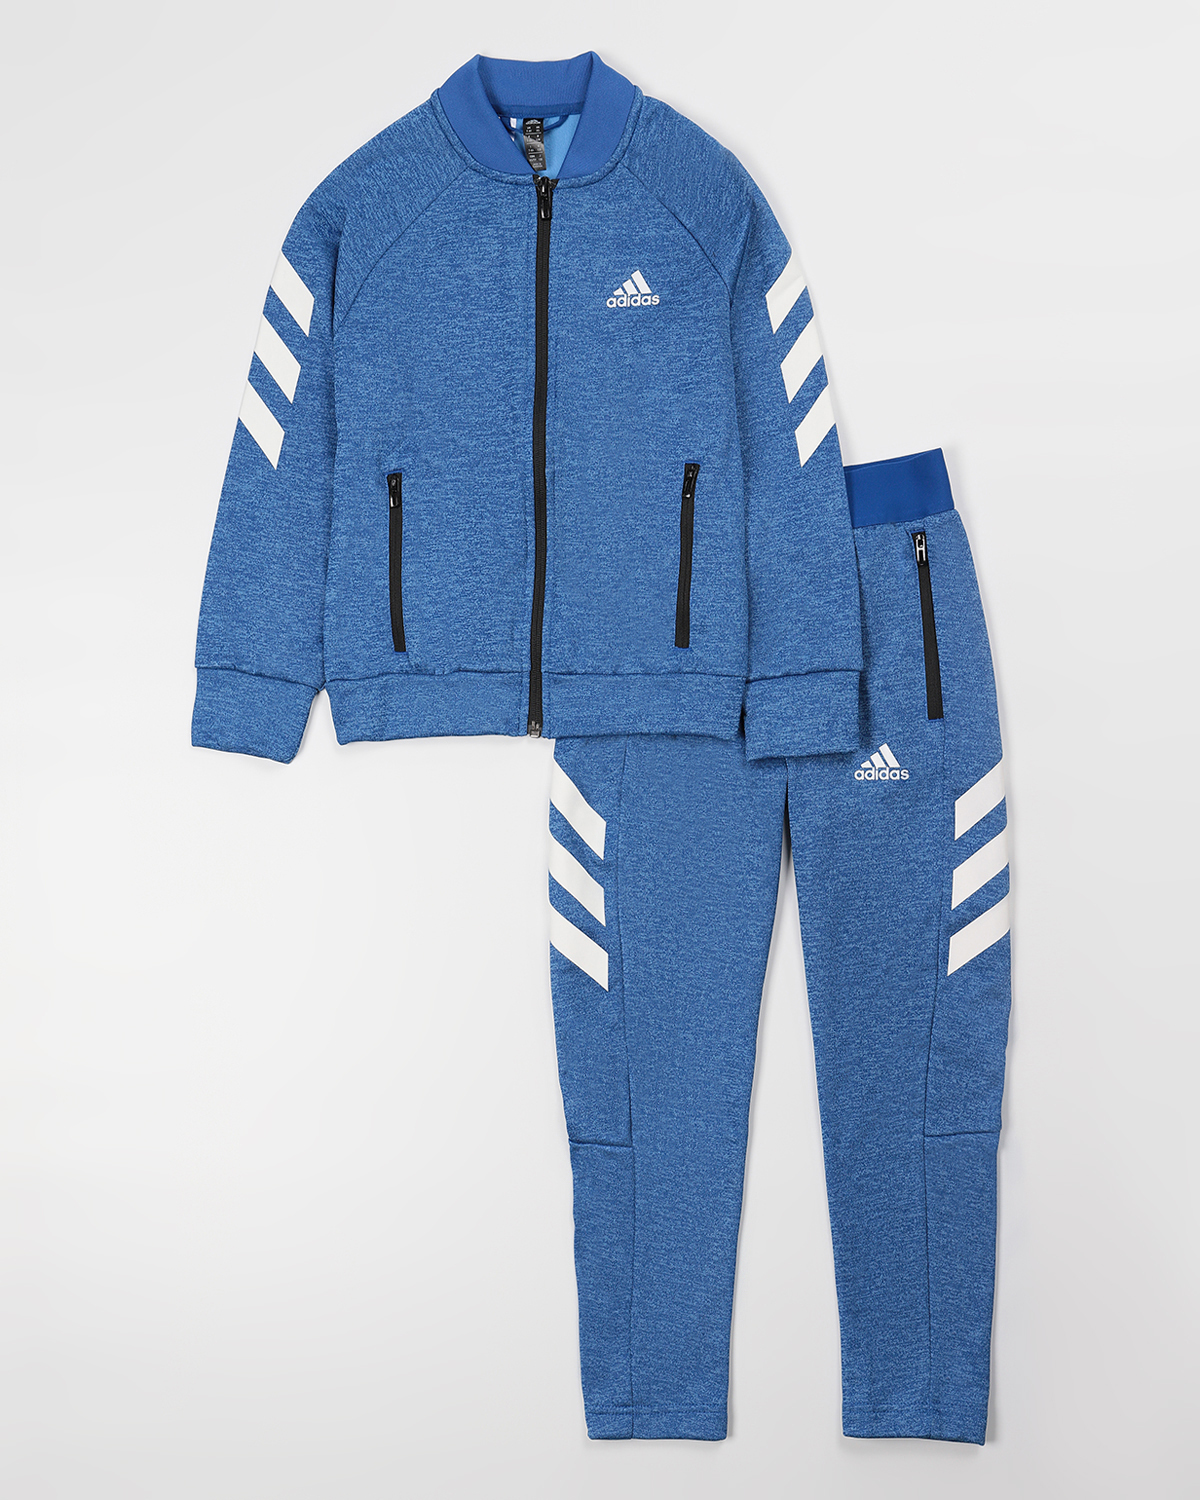 Спортивный костюм адидас на озон. Костюм для мальчика размер 130-140 адидас. Озон адидас. Adidas Originals костюм на мальчика 146-152 размер.